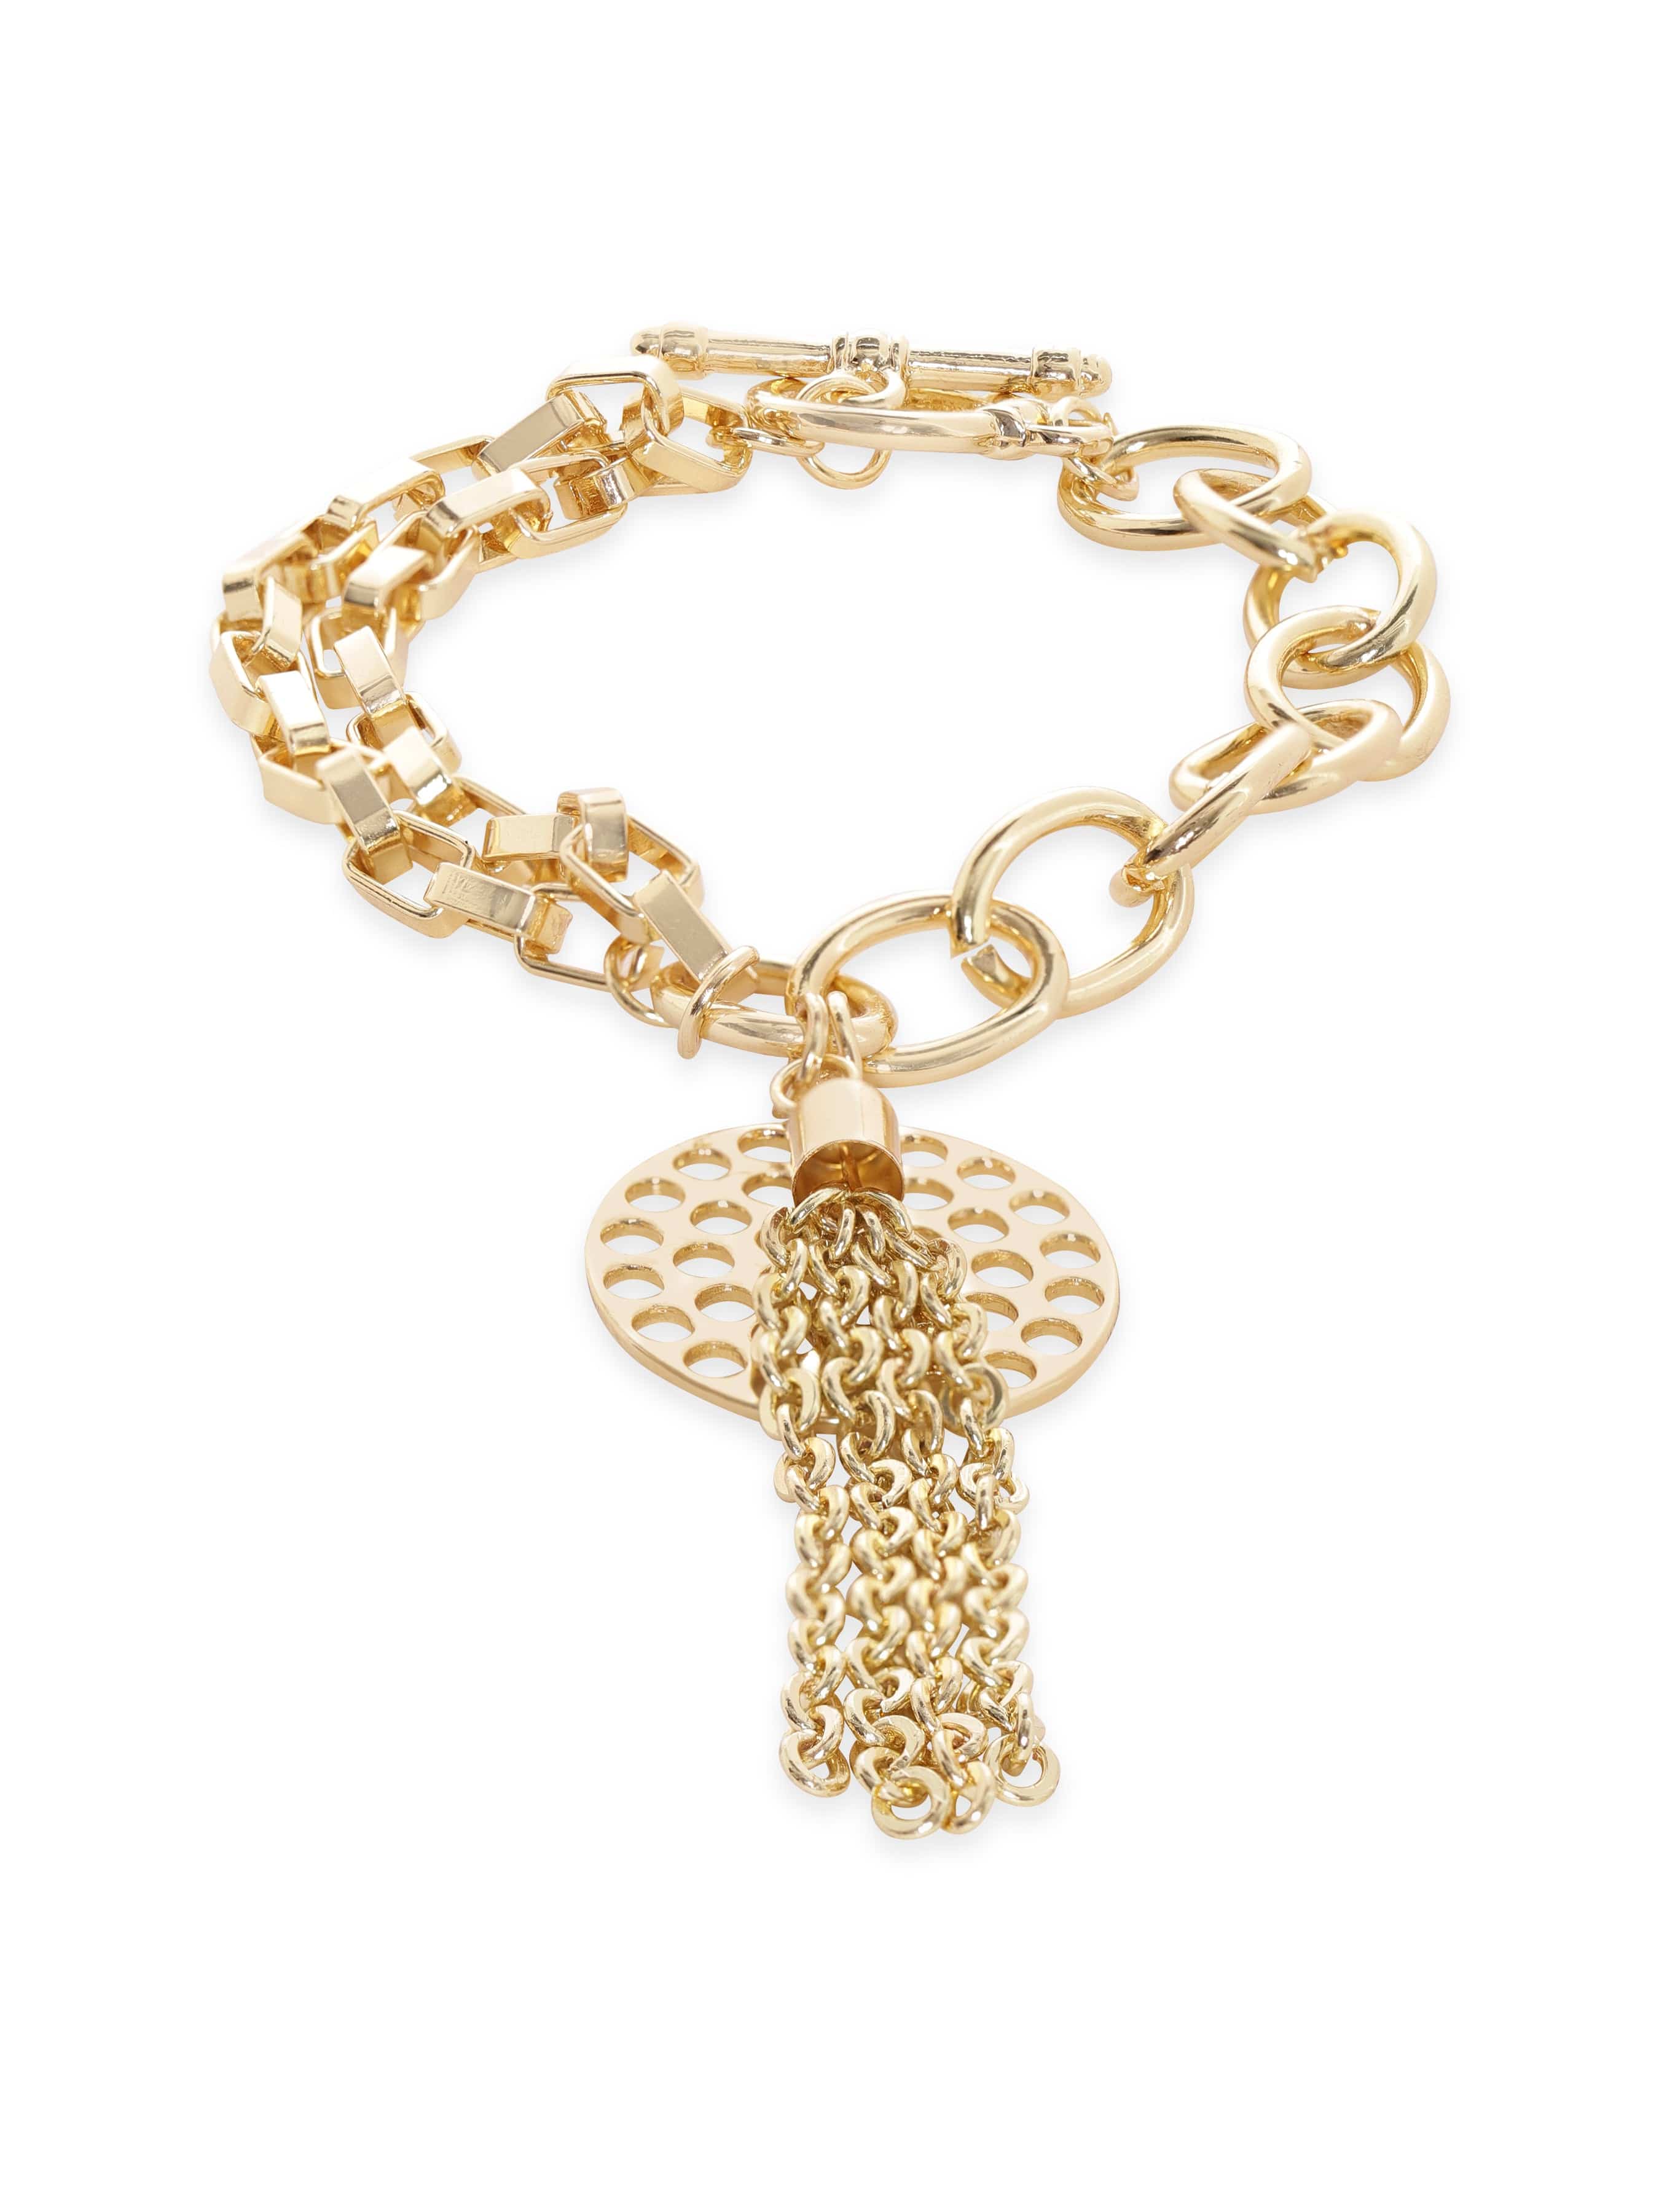 Chain For Charm Bracelet | Gold Bracelet Chain | Cable Chain Bracelet –  Helen Ficalora